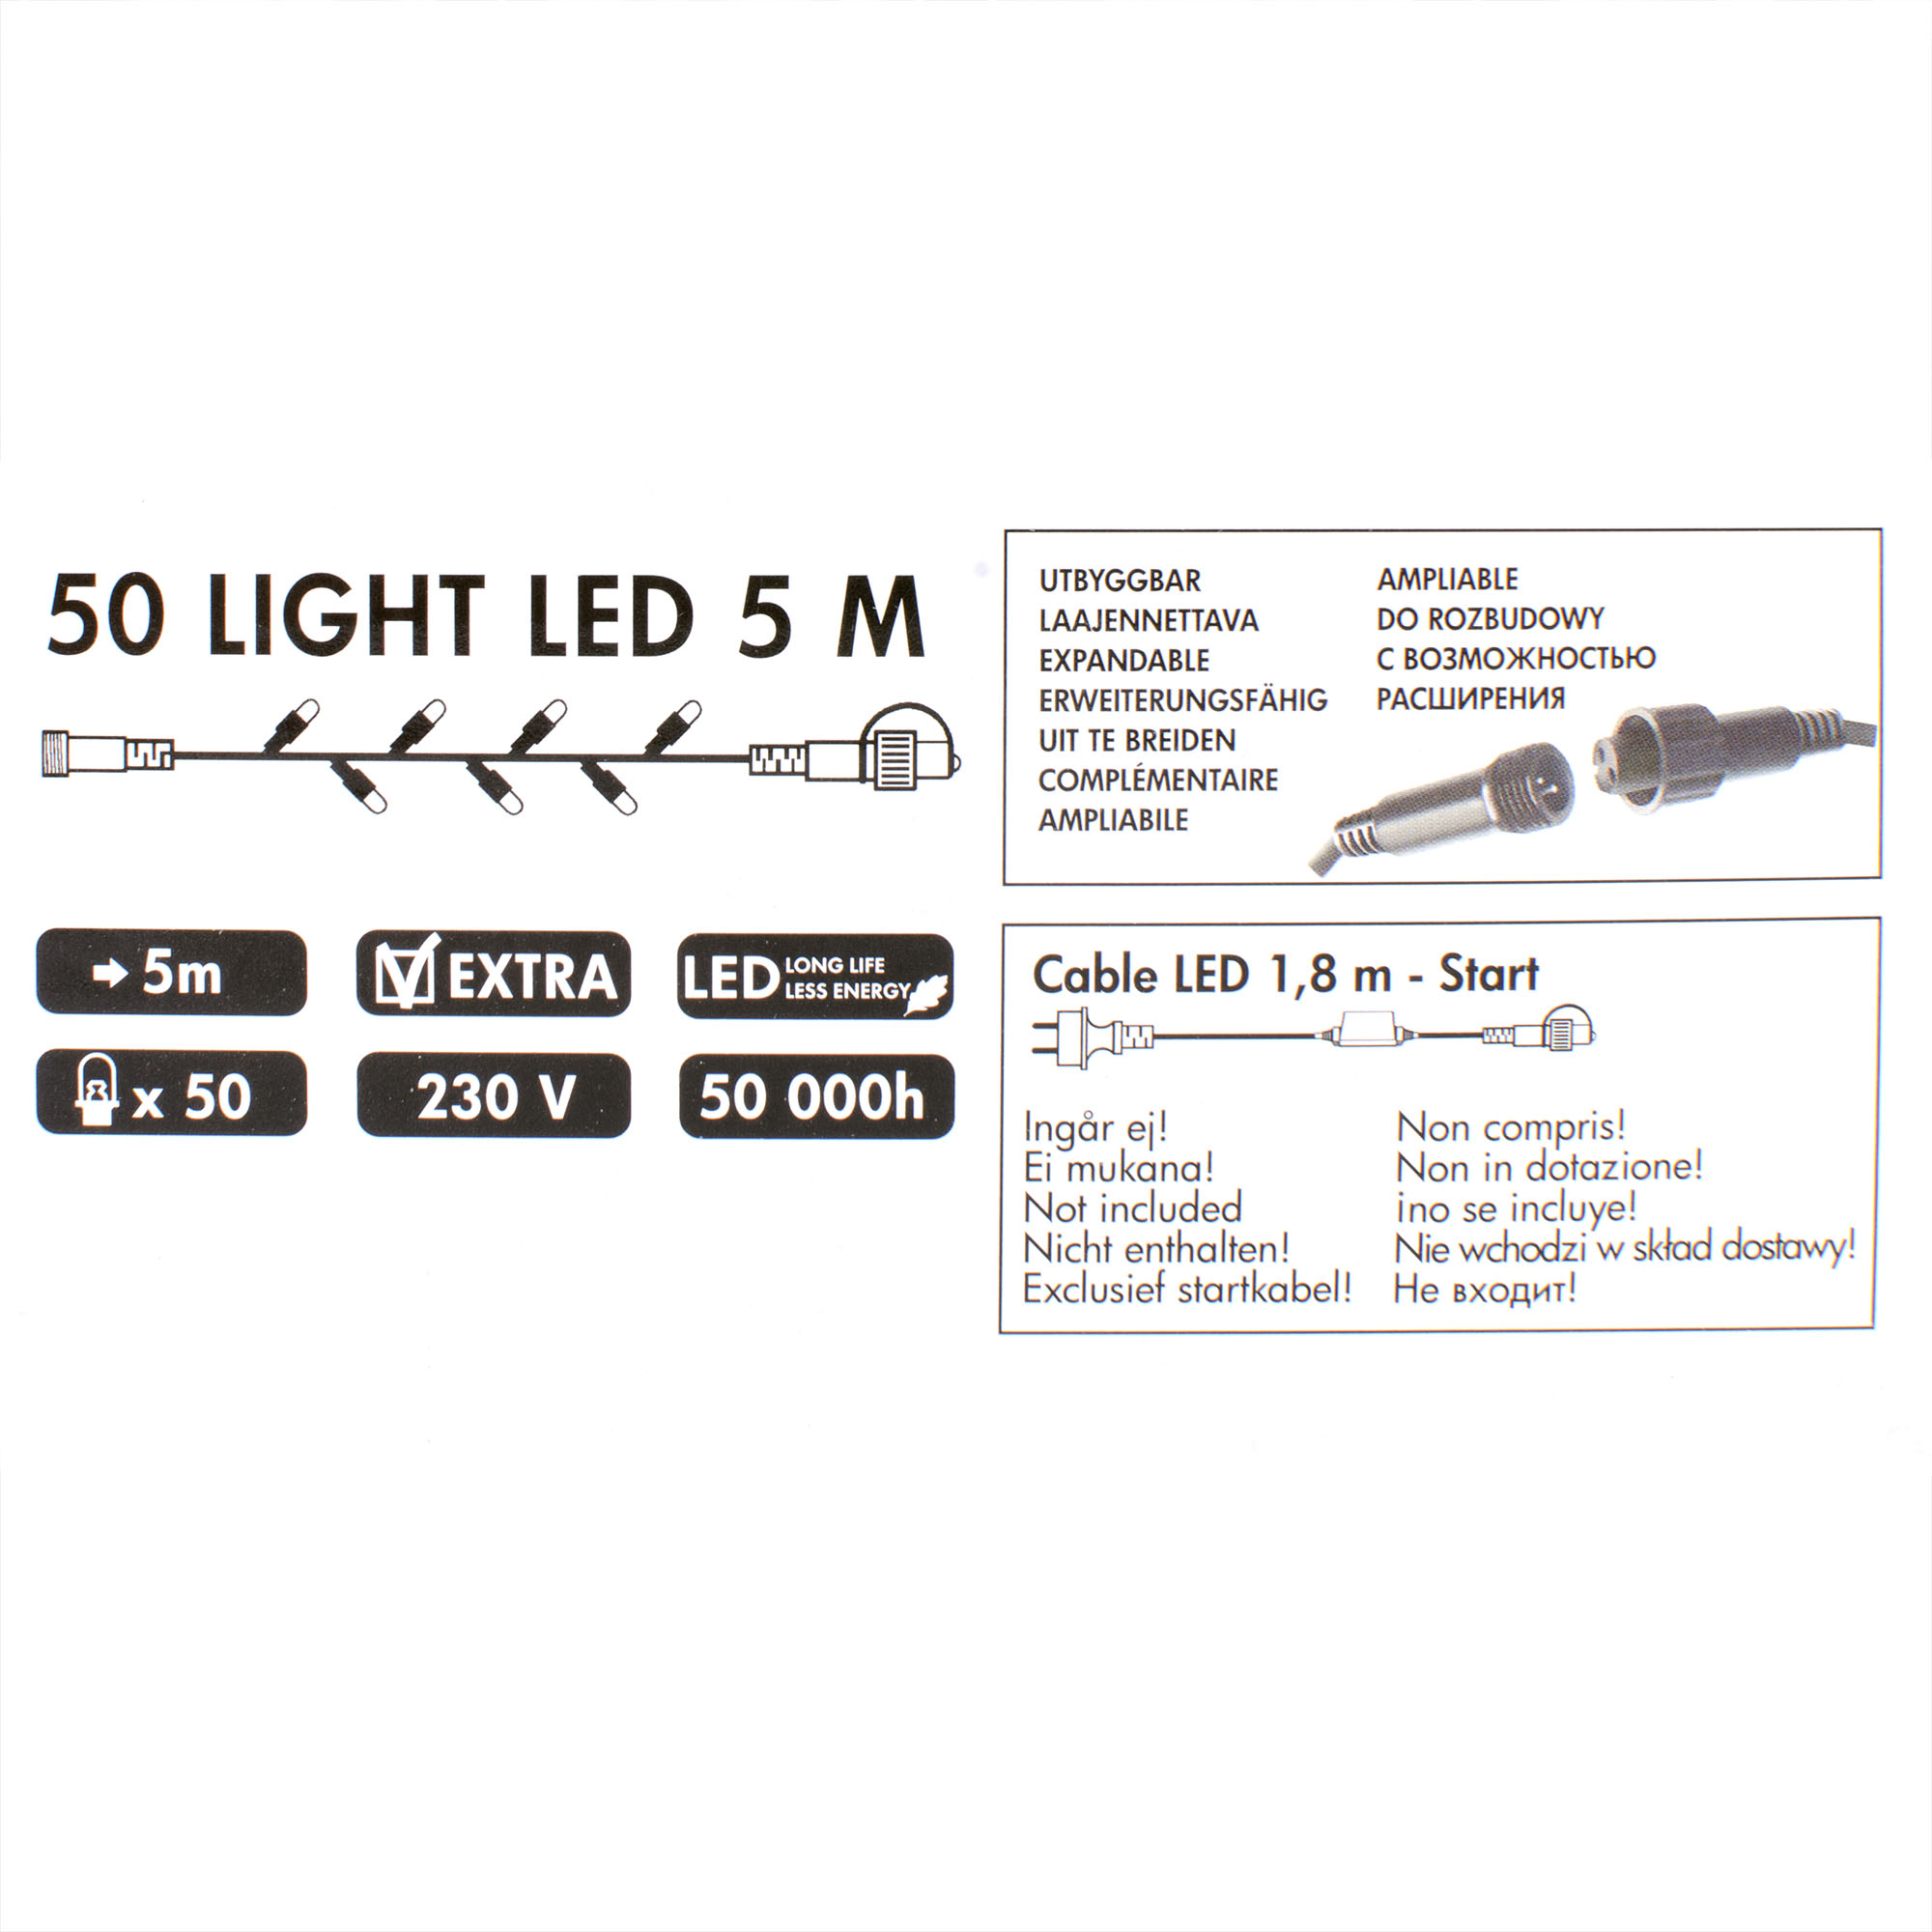 Электрогирлянда Star Trading 50 LED-ламп (465-01-TD-V), цвет фиолетовый - фото 2